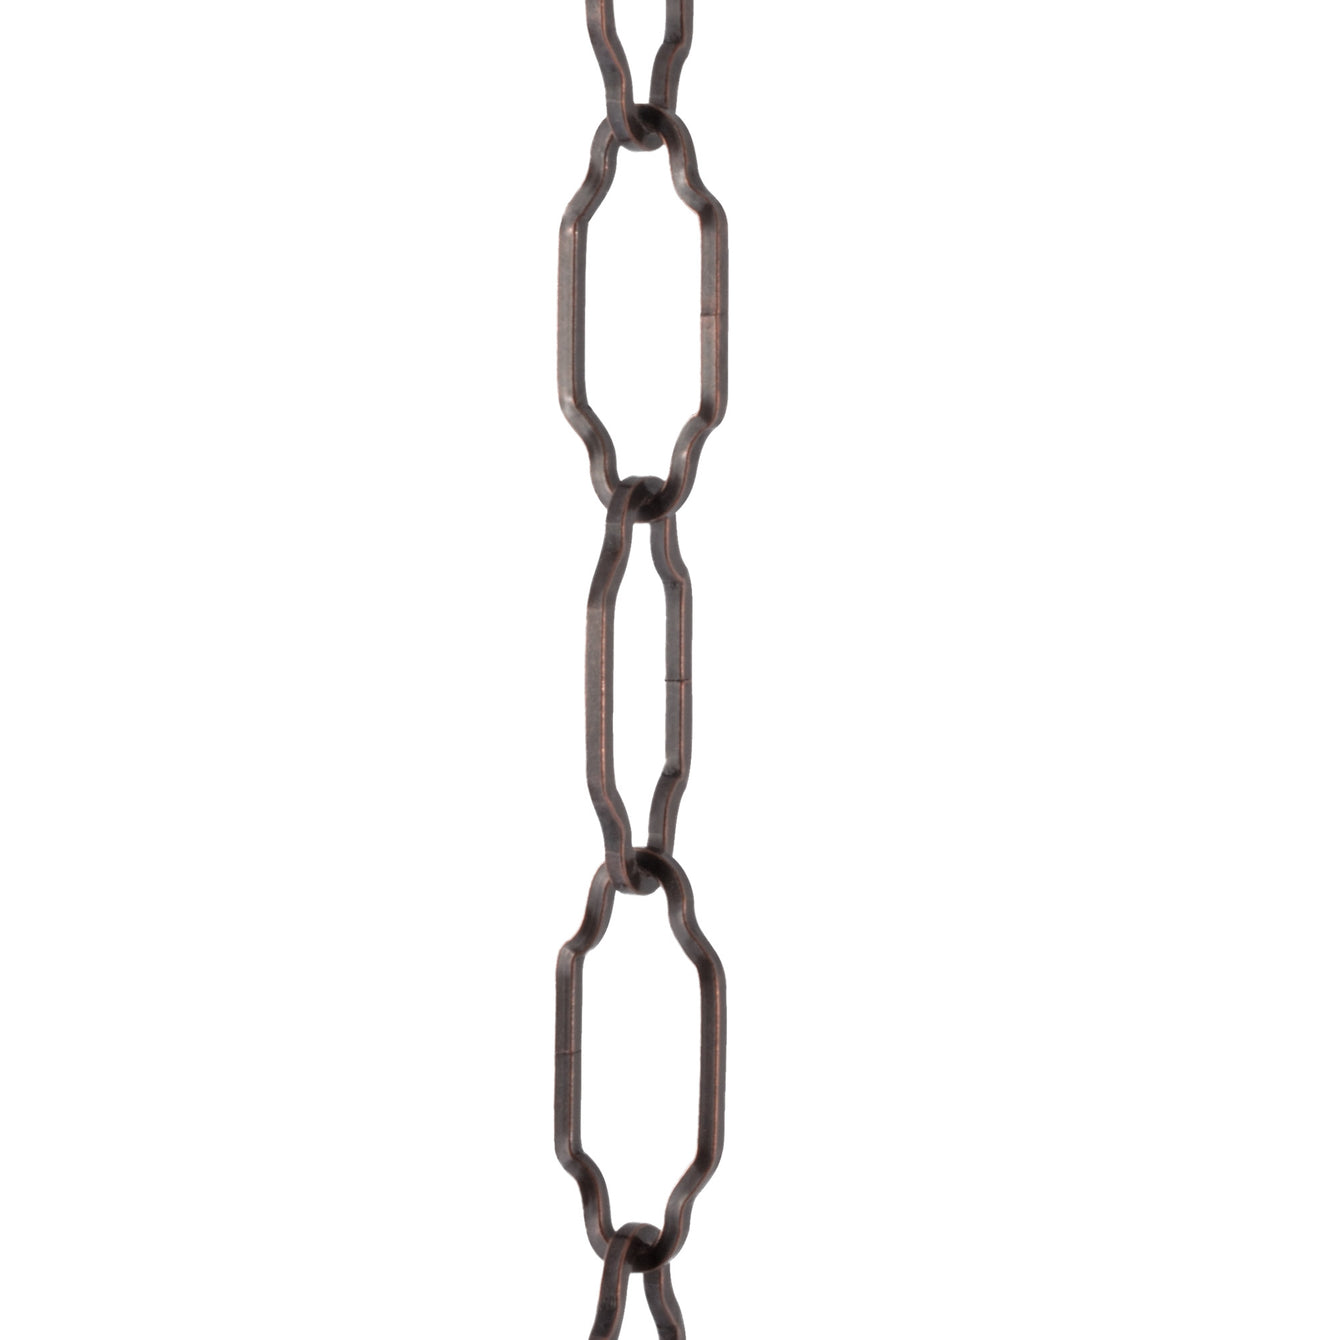 ElekTek Gothic Open Link Chain for Chandelier & Lighting 45mm x 19mm Per Linear Metre - Buy It Better 